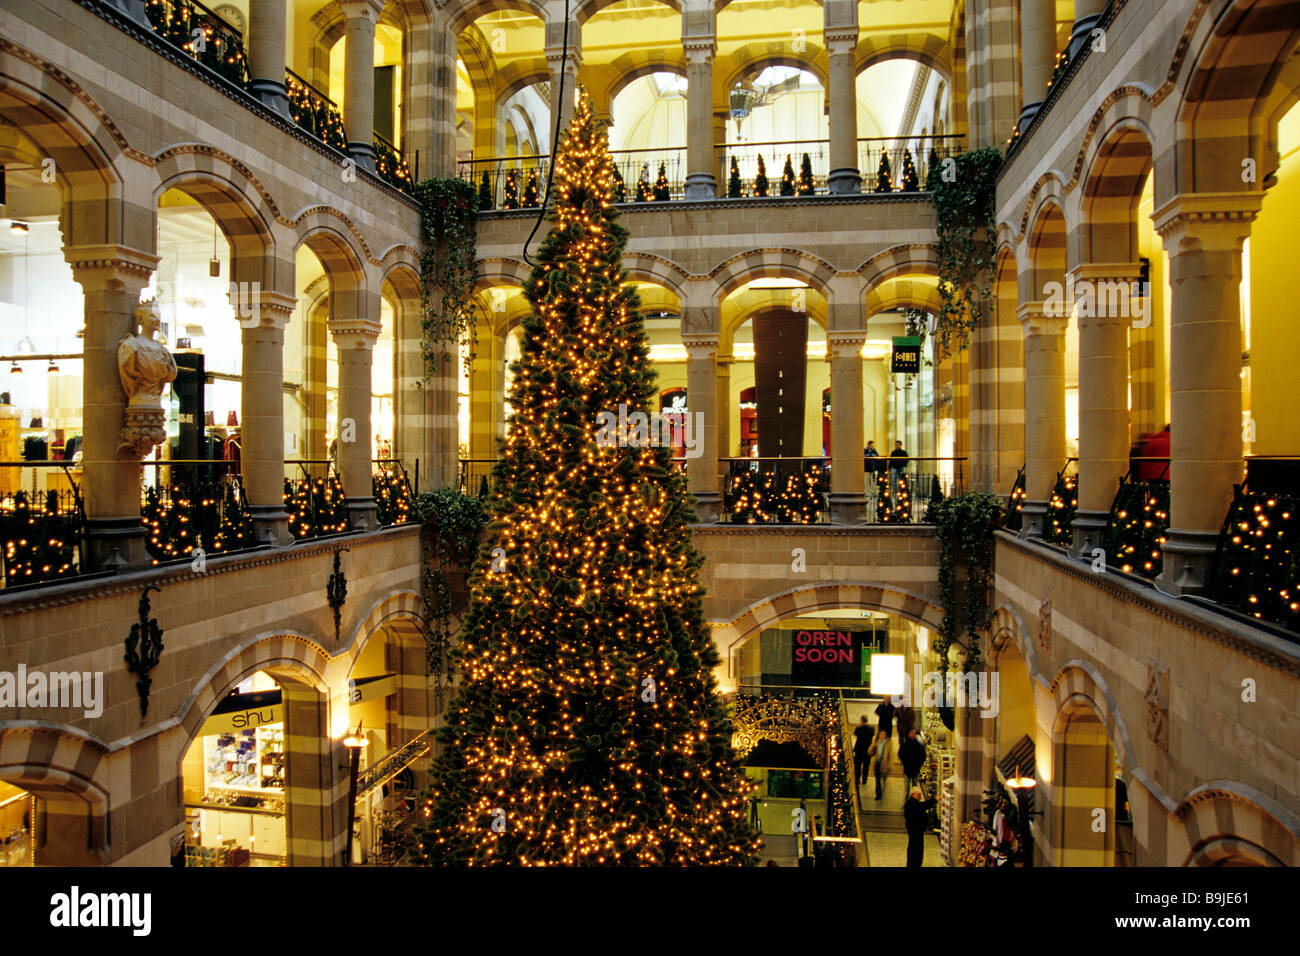 Innenhof, Magna Plaza in der Weihnachtszeit, Shopping-Mall in der ehemaligen Hauptpost Gebäude, Nieuwezijds Voorburgwal, Stockfoto